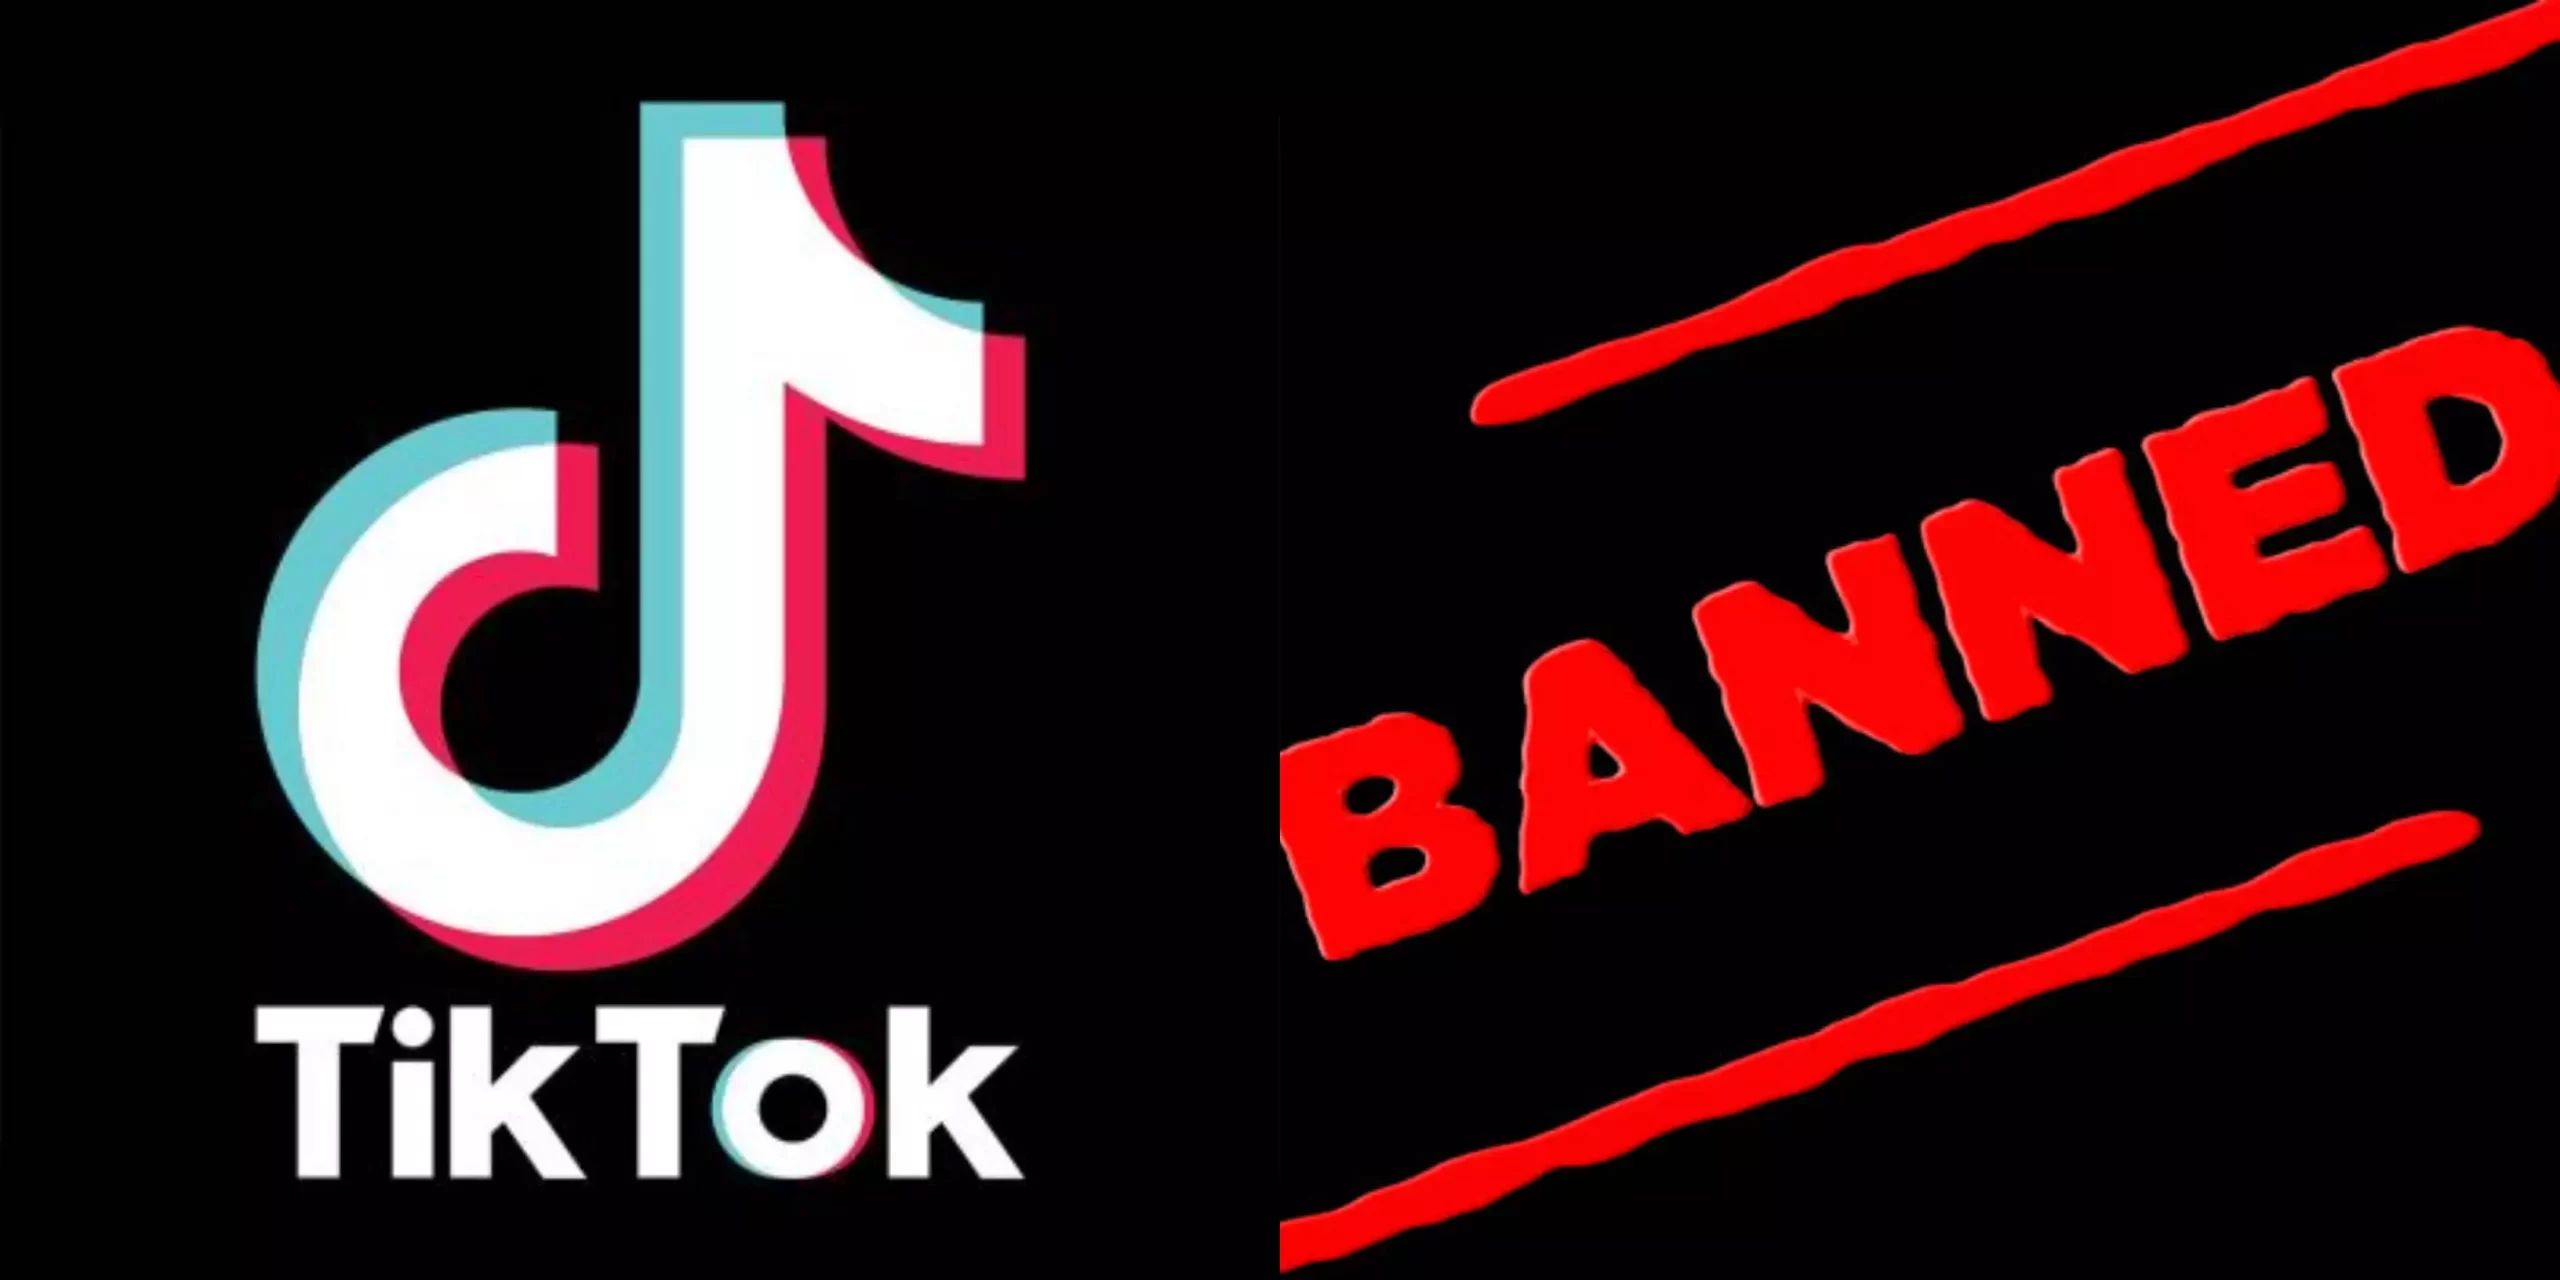 فرنسا تحظر تطبيق TikTok من الأجهزة الحكومية